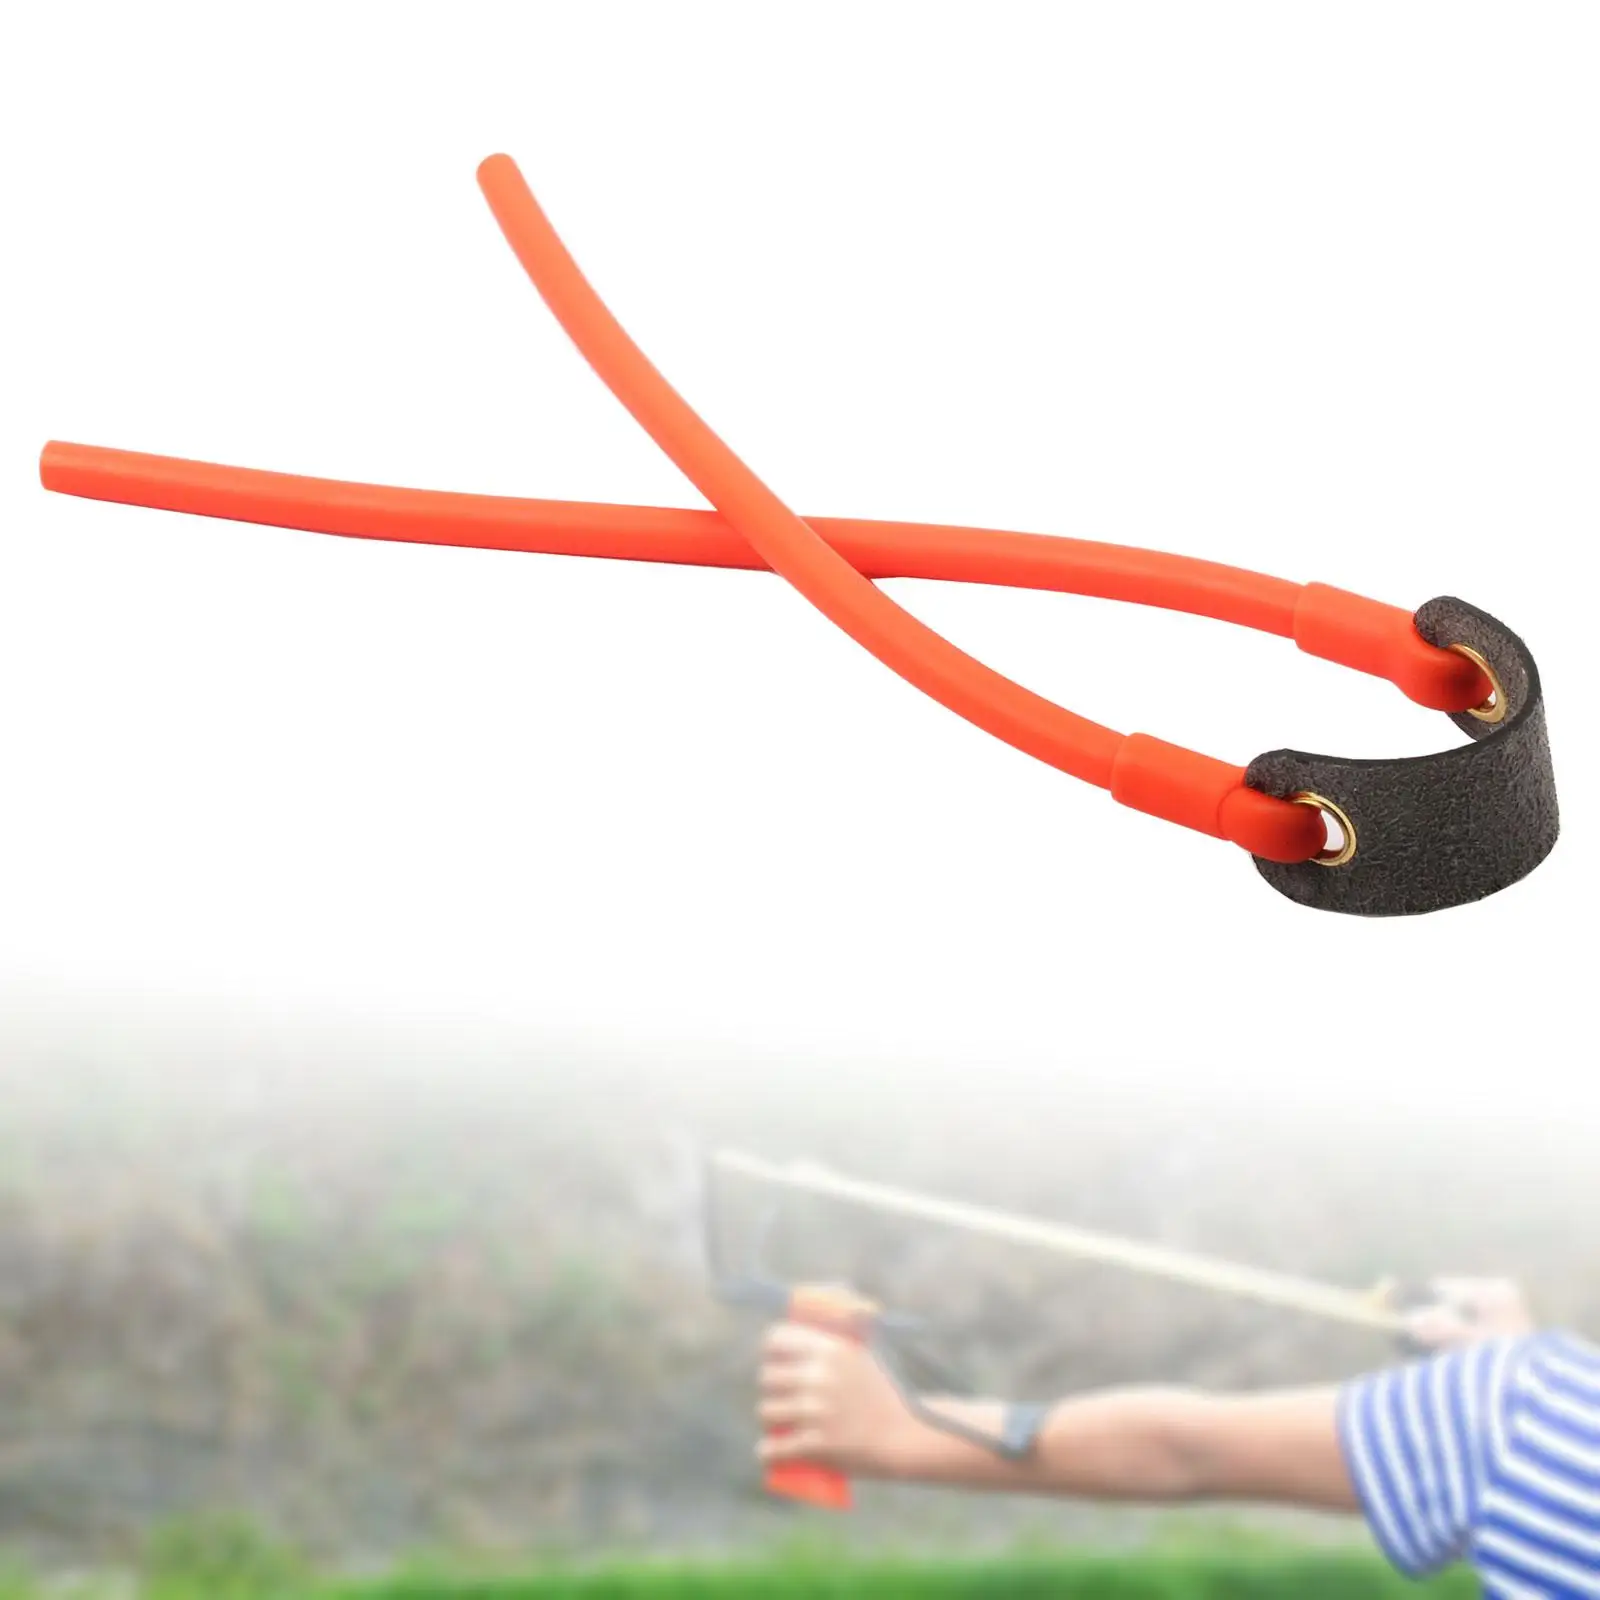 

Резиновая сменная лента для рогатки, эластичная регулируемая лента для игр на открытом воздухе, соревнований, охоты